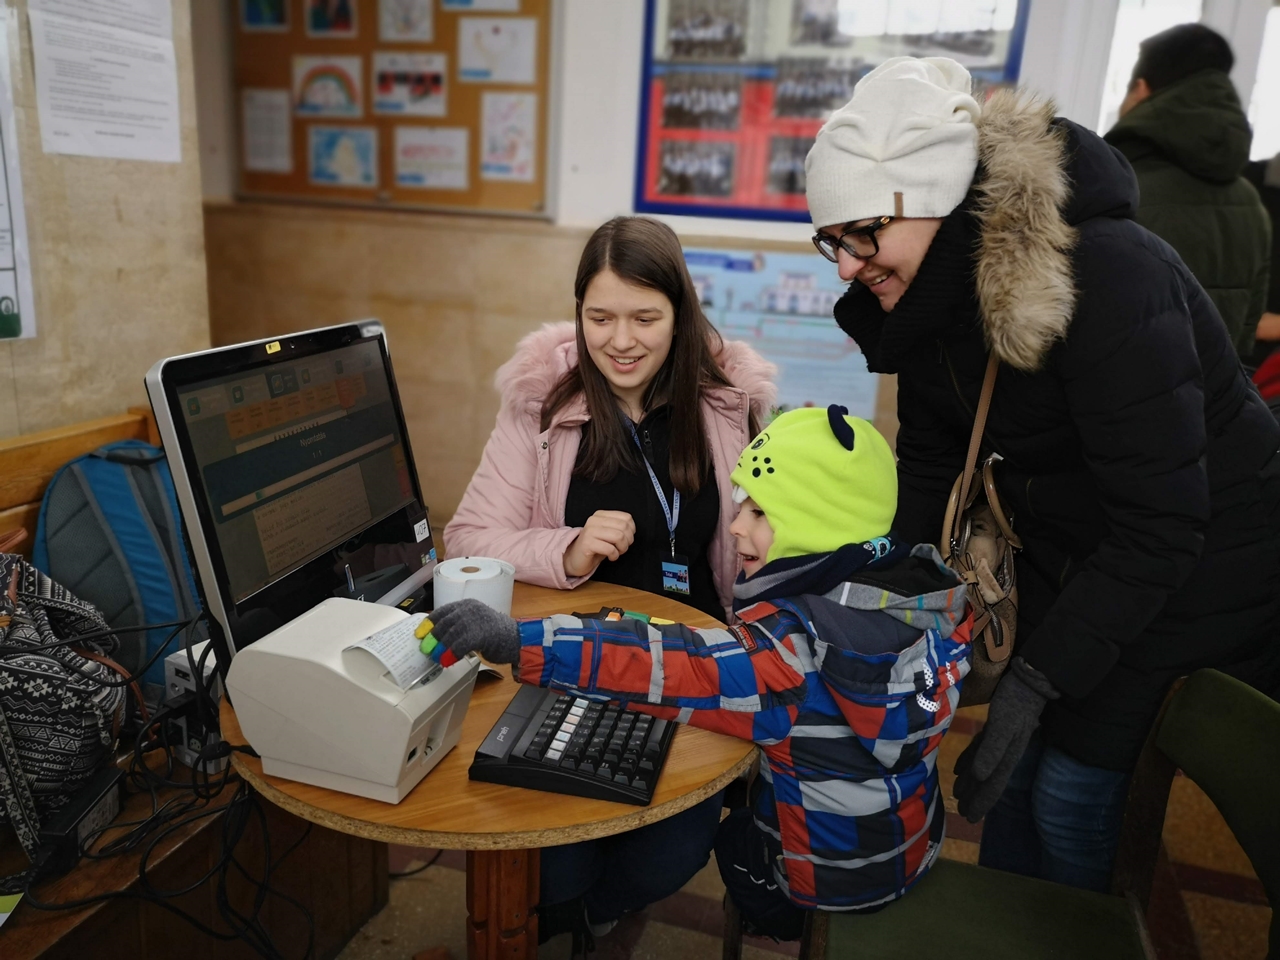 A Gyermekvasút nyílt napján a gyerekek kipróbálhatják Széchenyihegy állomás vasúti berendezéseit, például jegyet is nyomtathatnak (fotó: MÁV Zrt.)